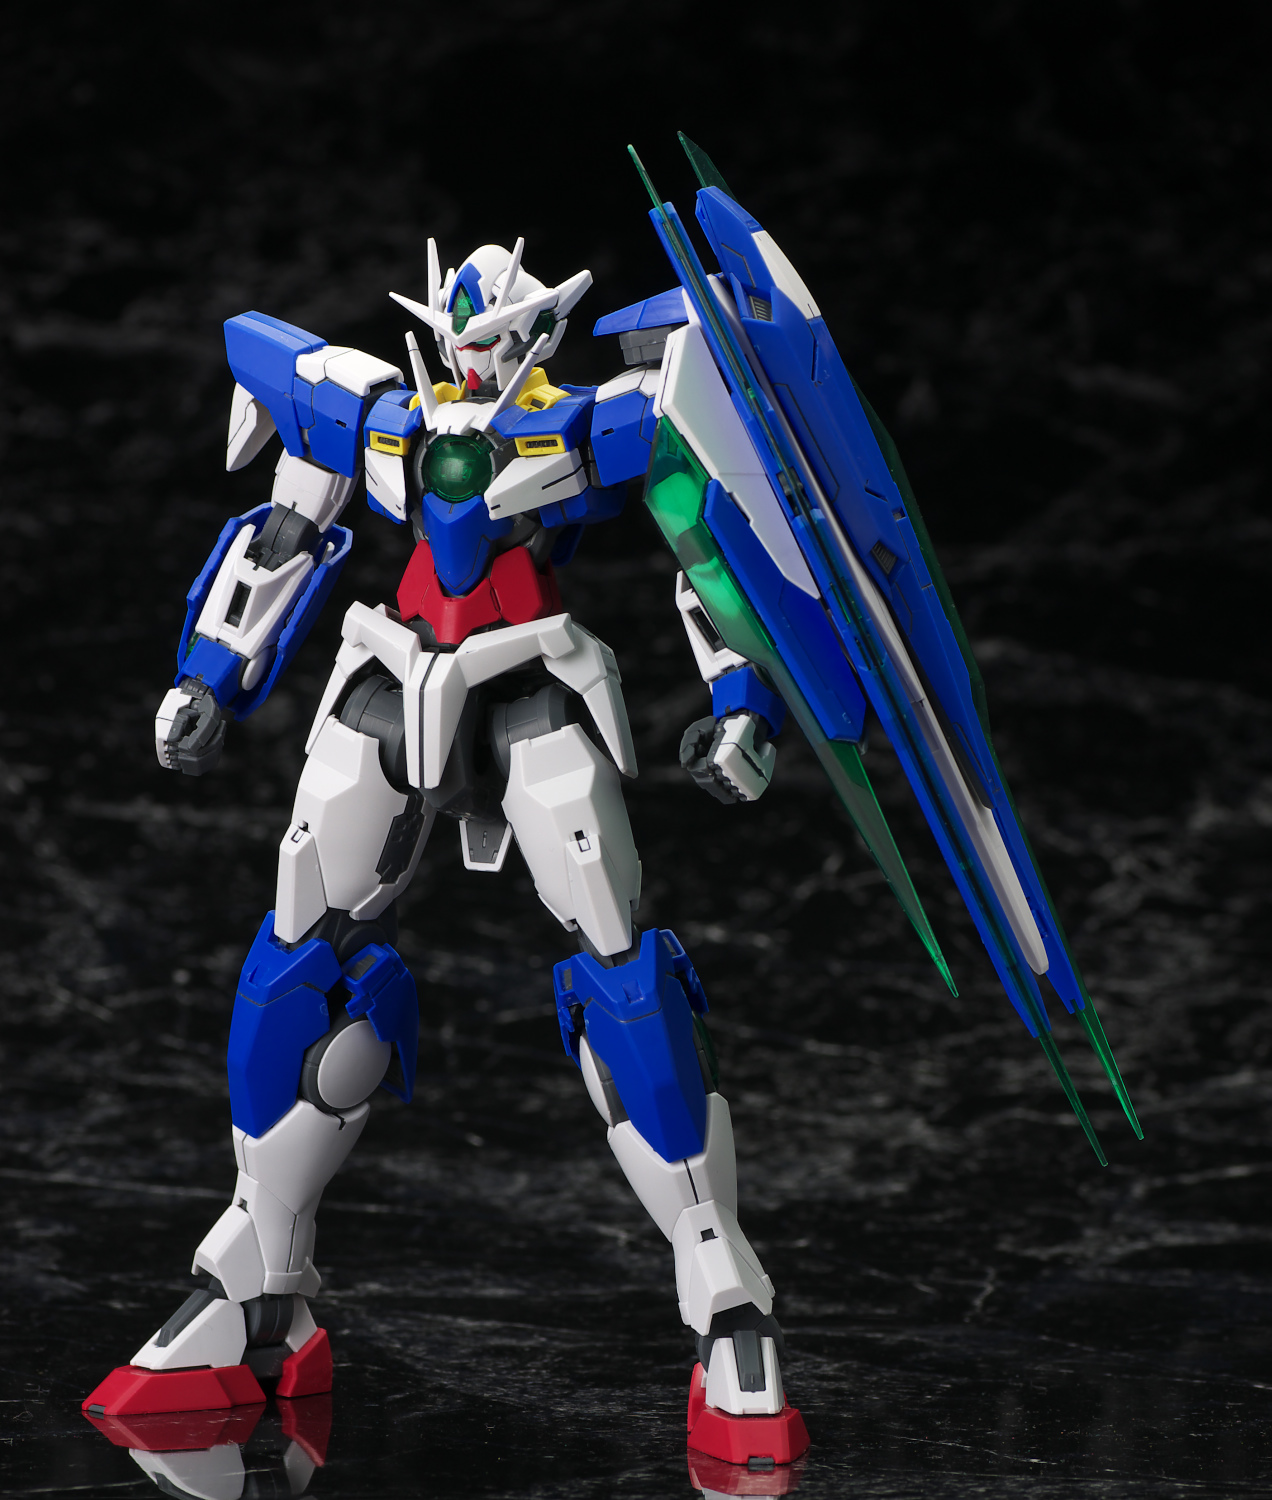 ... MG 1/100 Gundam 00 Qan[T] No.41 Hi Res Images (Many WALLPAPER Size